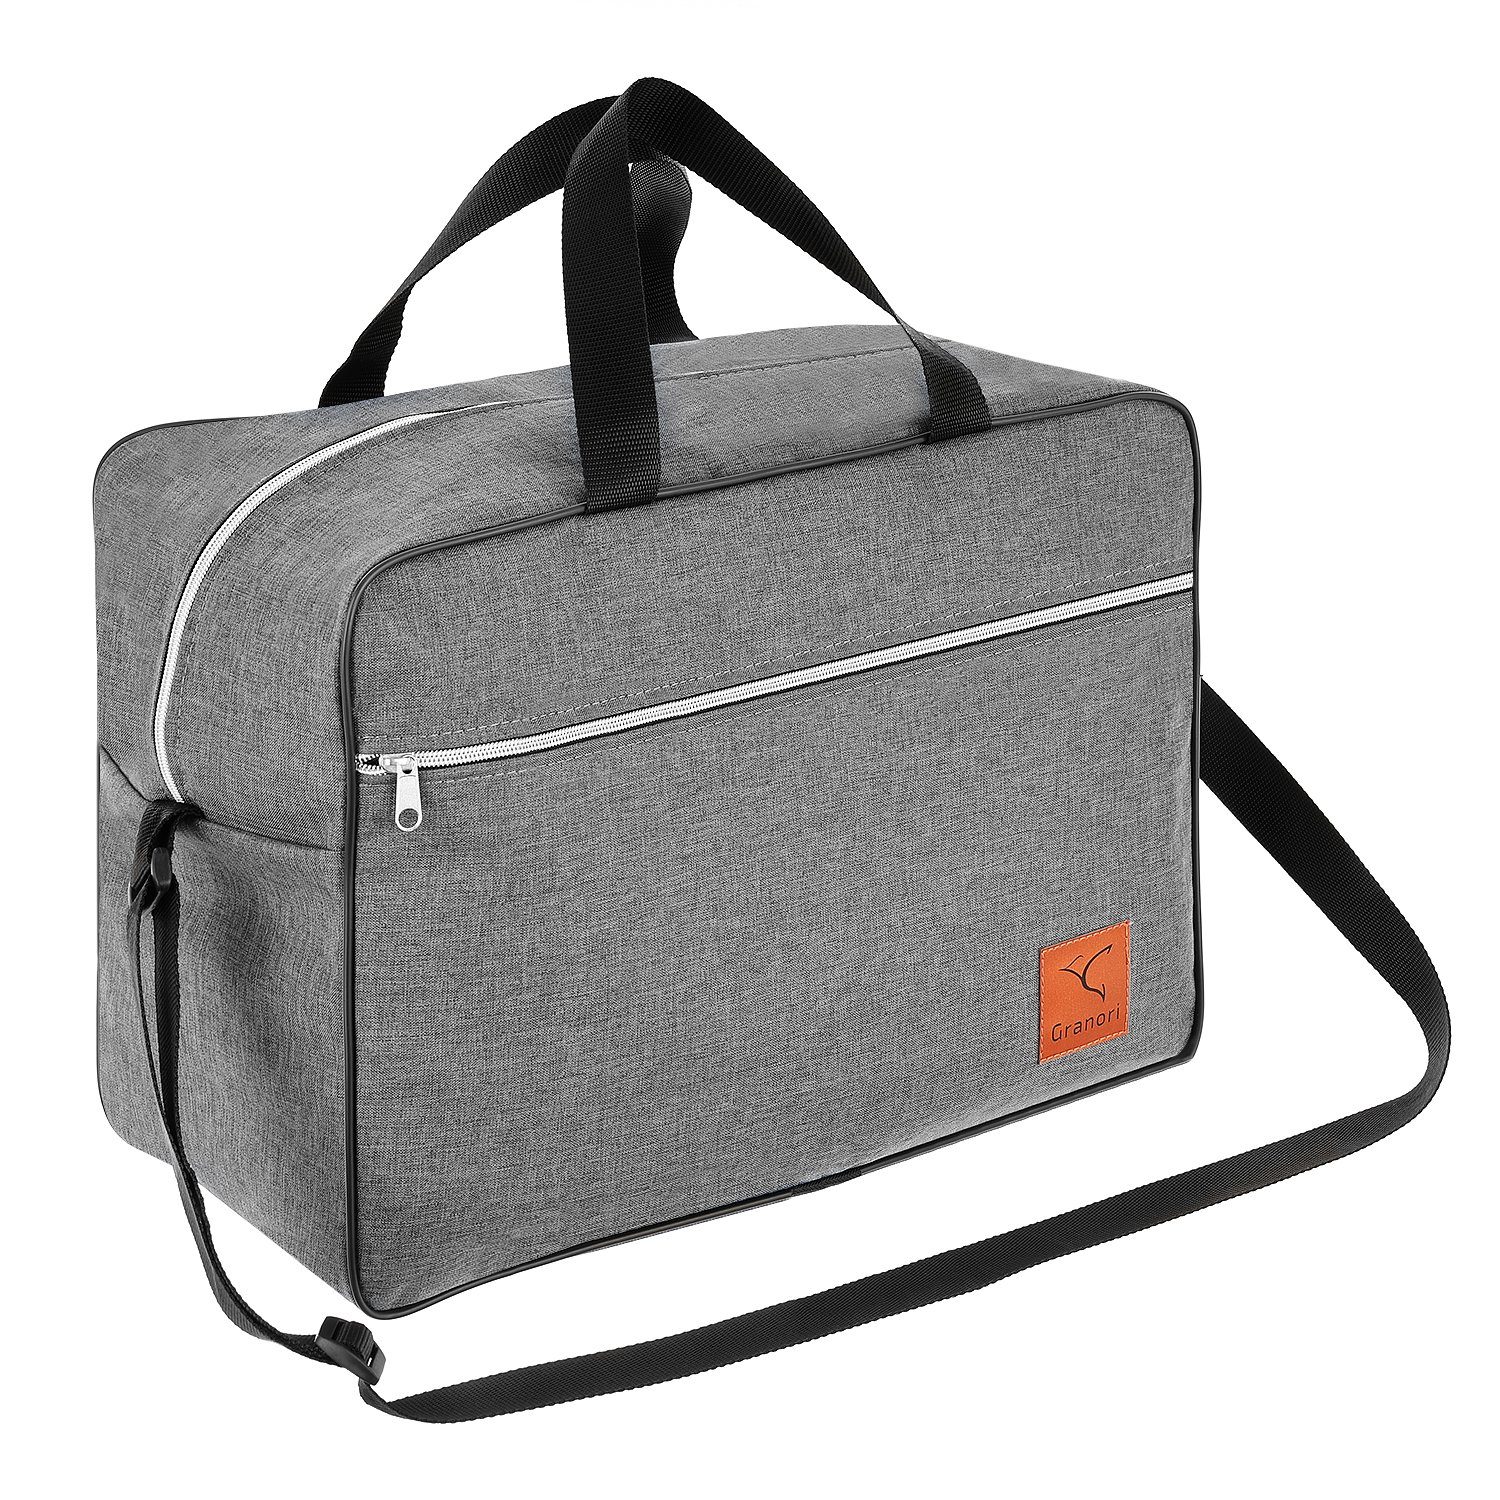 Granori Reisetasche 40x30x25 cm als Handgepäck 30 l für Flug mit z. B. Eurowings, extra leicht, mit geräumigem Hauptfach und verstellbarem Schultergurt Grau | Reisetaschen